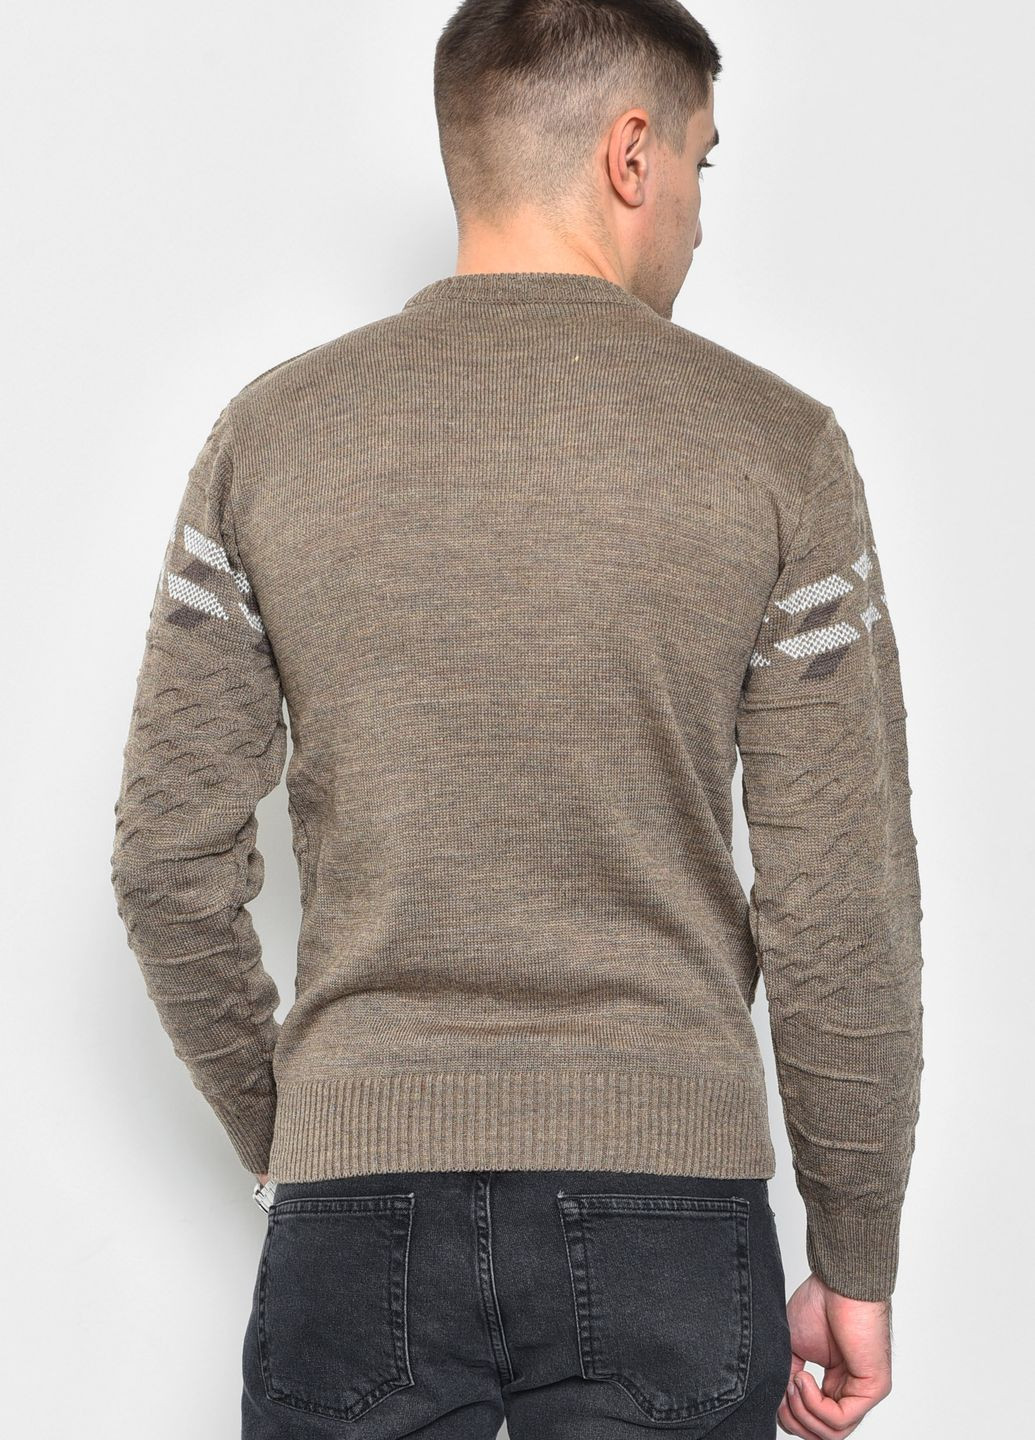 Коричневий демісезонний светр чоловічий однотонний коричневого кольору пуловер Let's Shop